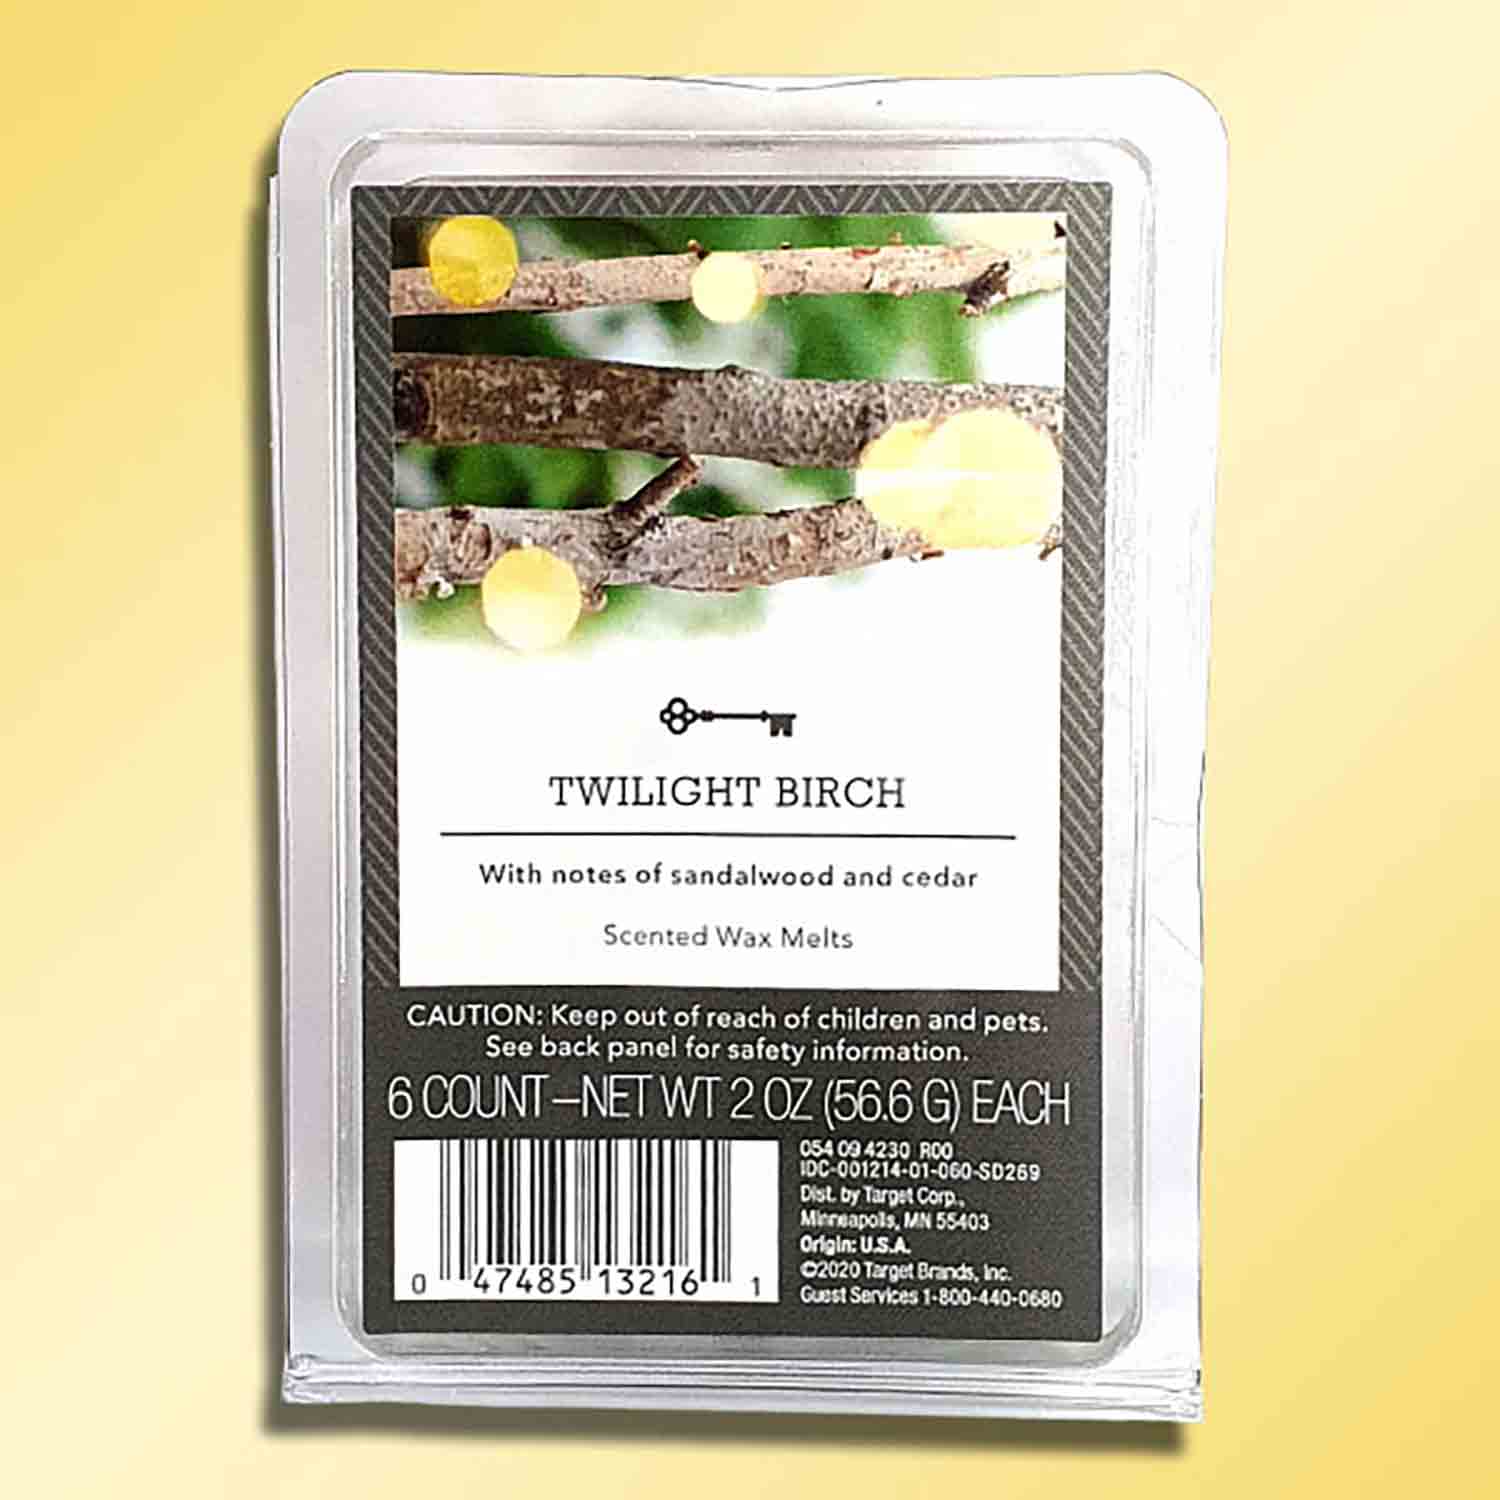 Target USA Twilight Birch vonný vosk 56 g